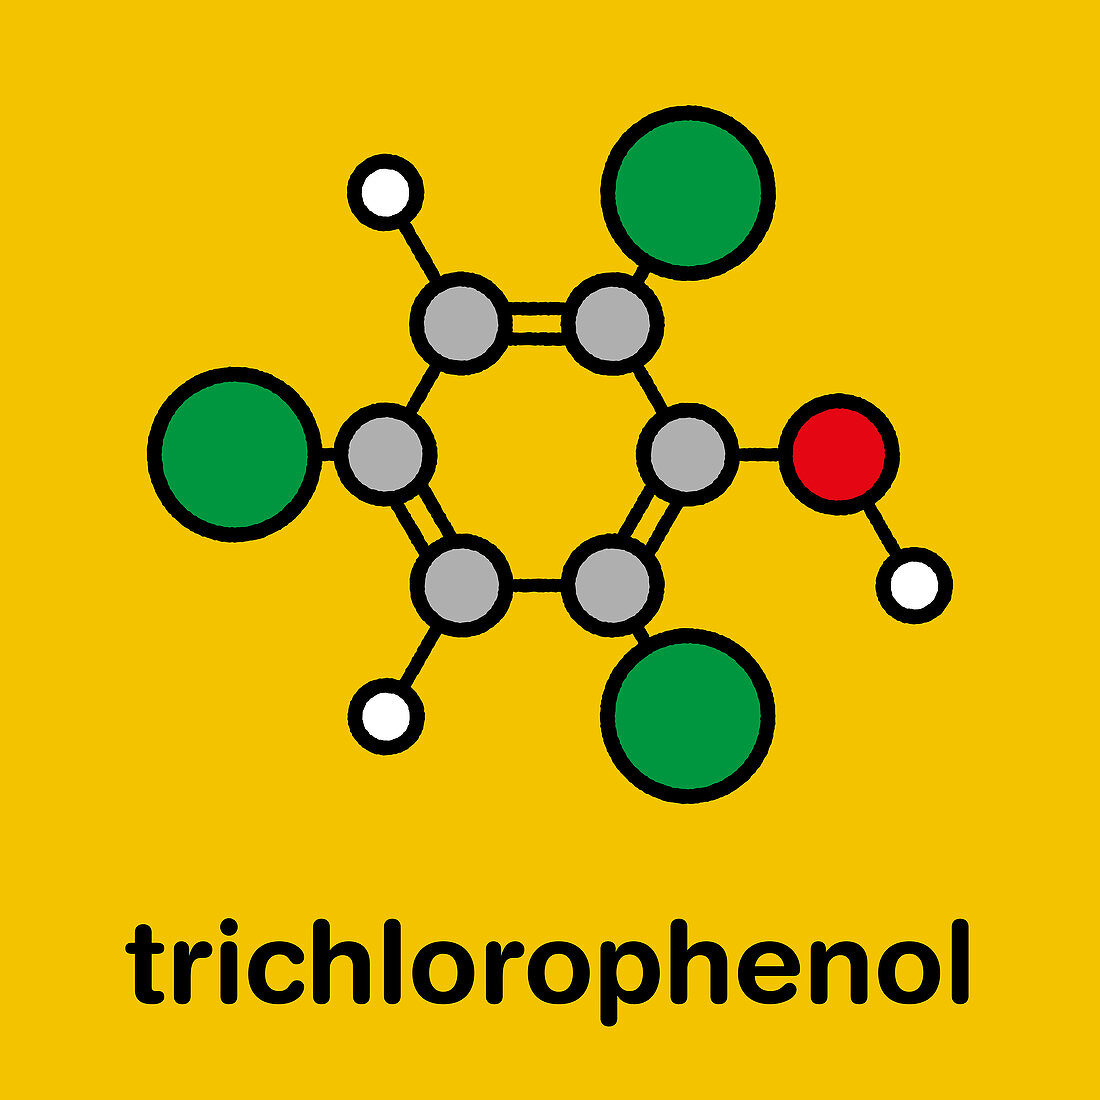 Trichlorophenol molecule, illustration